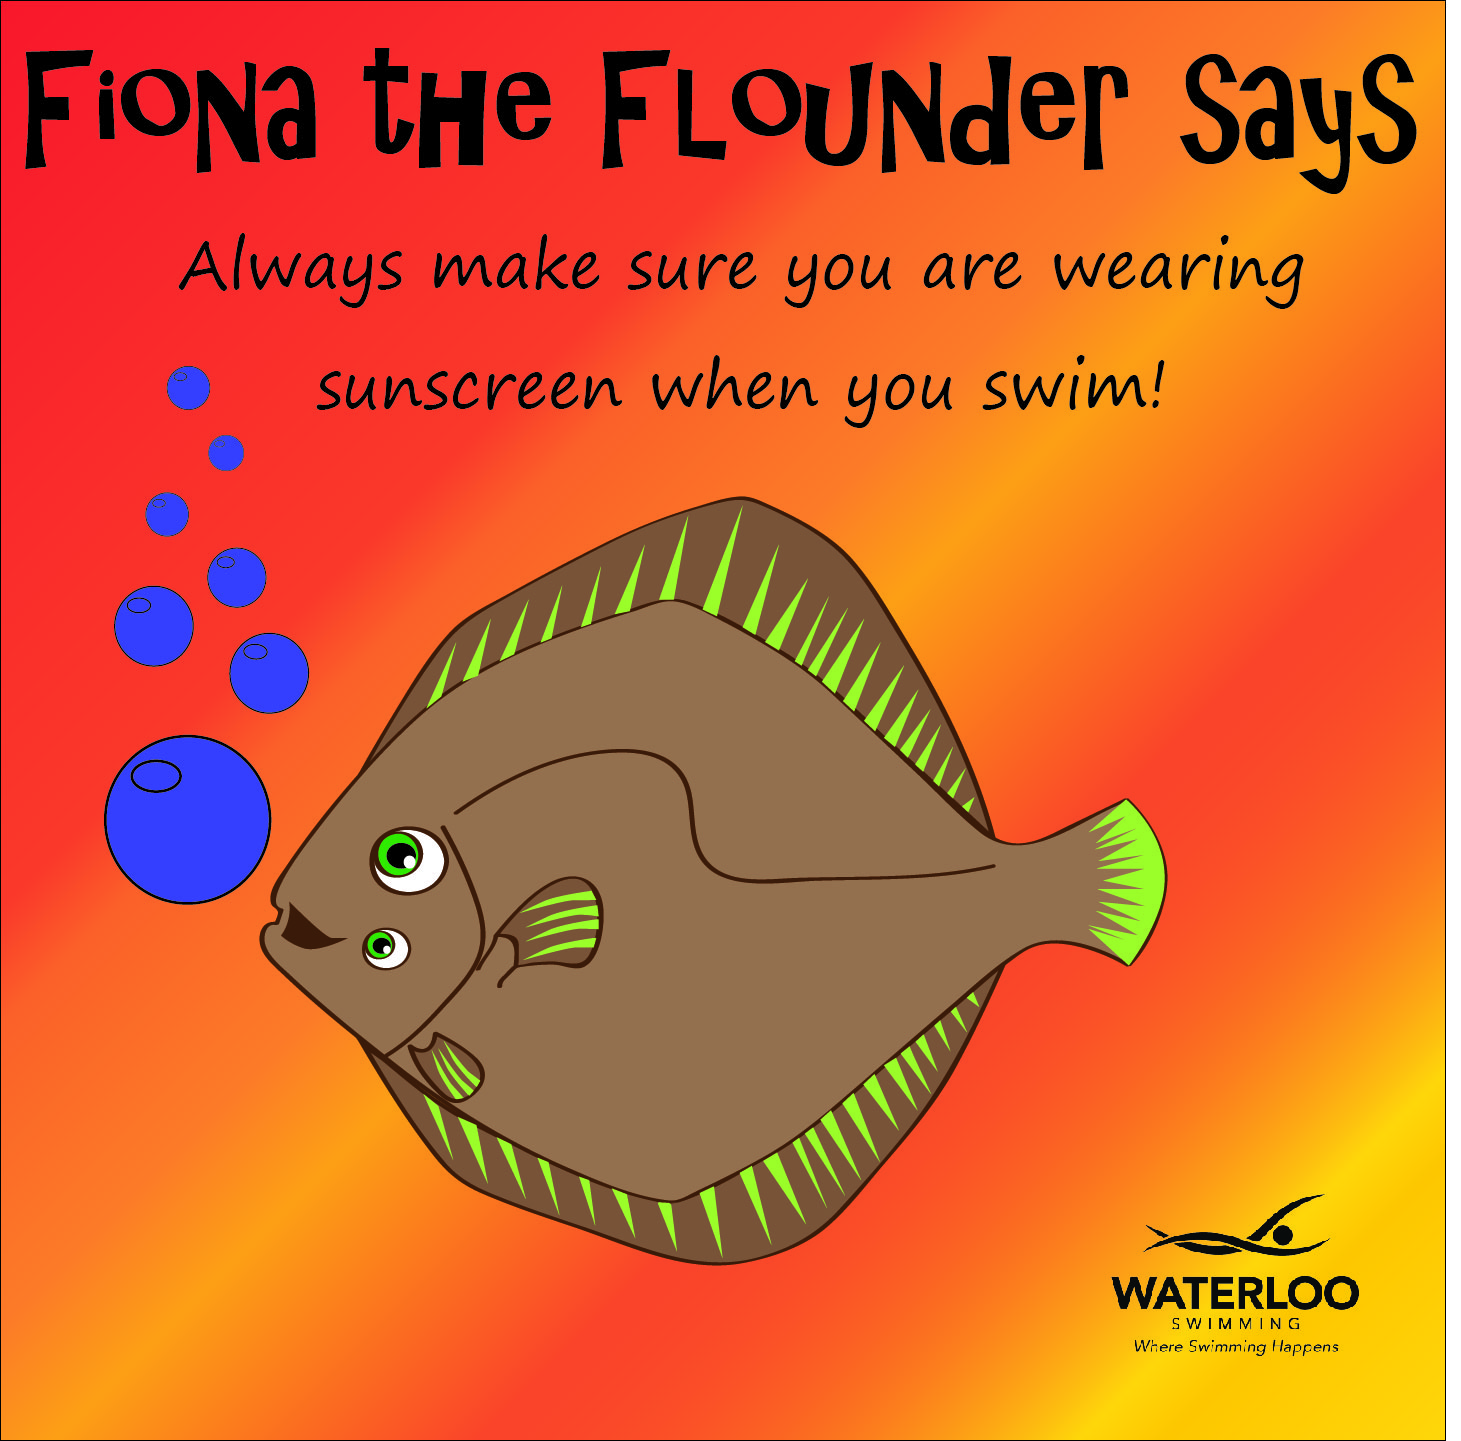 Fiona the Flounder